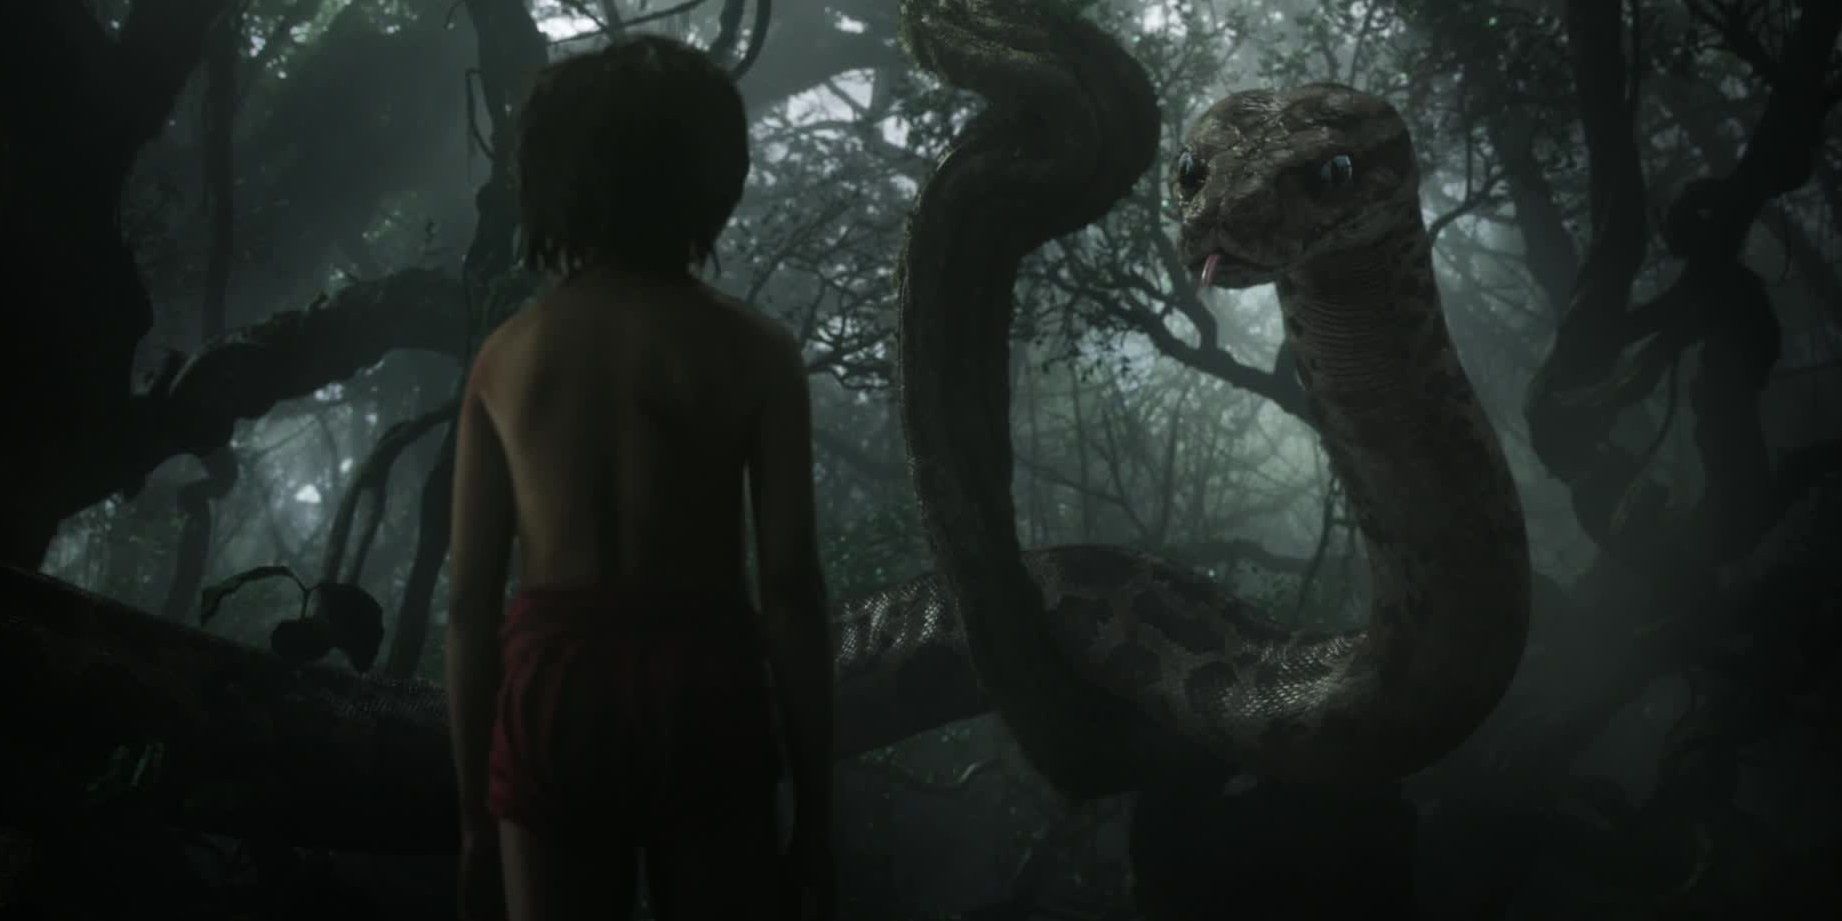 Mowgli and Kaa talk in The Jungle Book